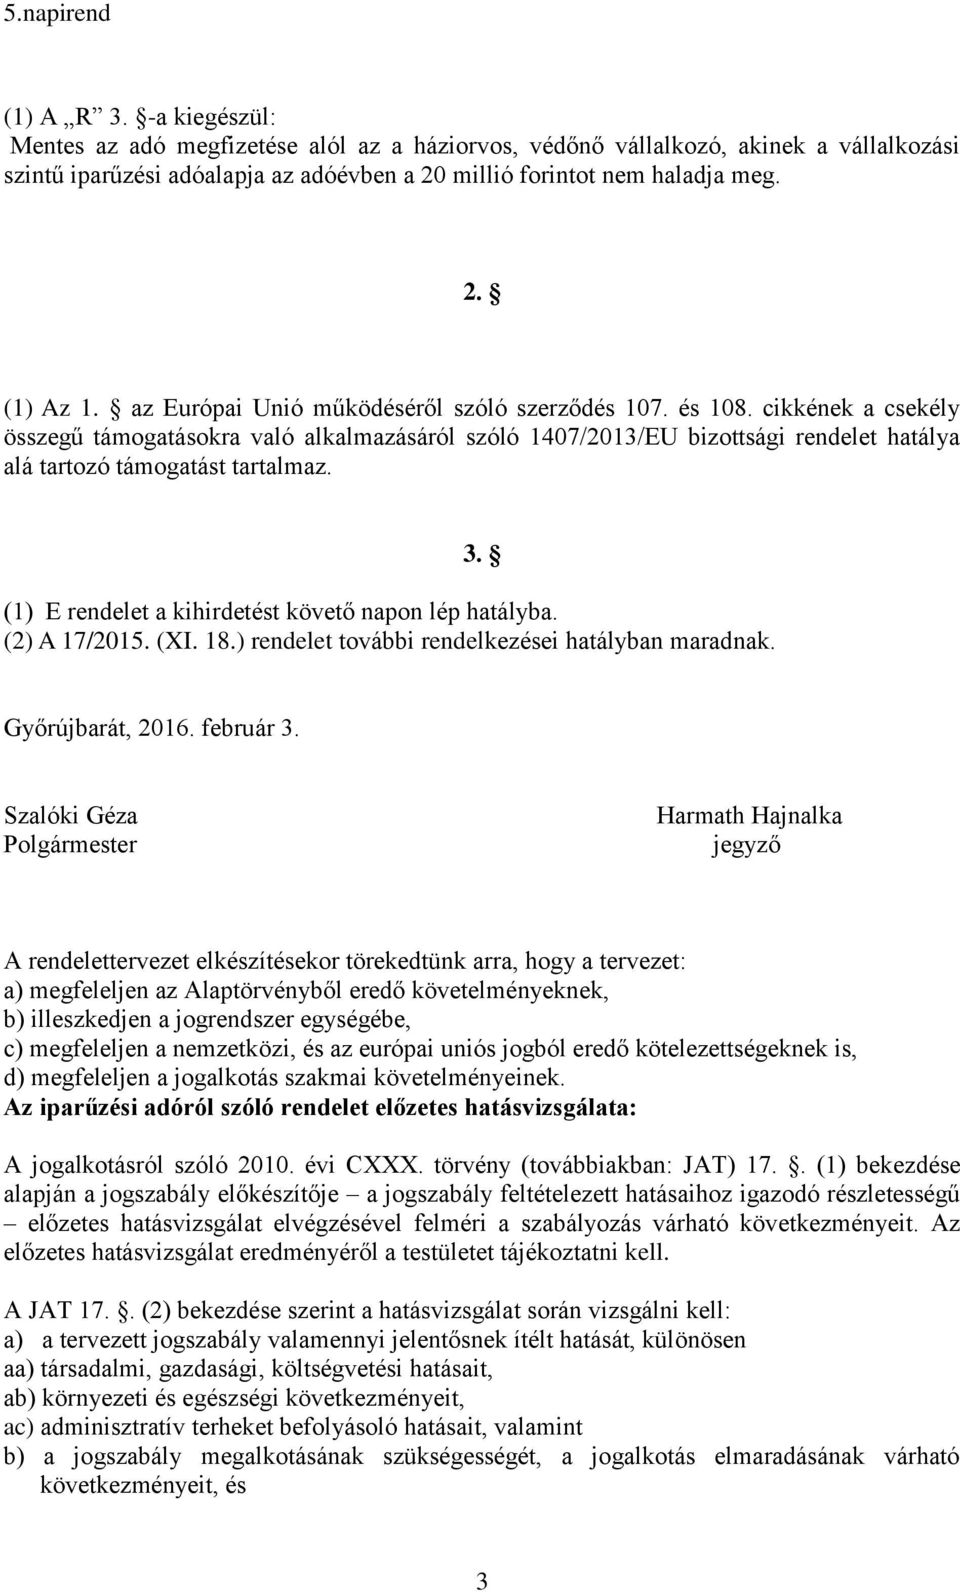 (1) E rendelet a kihirdetést követő napon lép hatályba. (2) A 17/2015. (XI. 18.) rendelet további rendelkezései hatályban maradnak. 3. Győrújbarát, 2016. február 3.